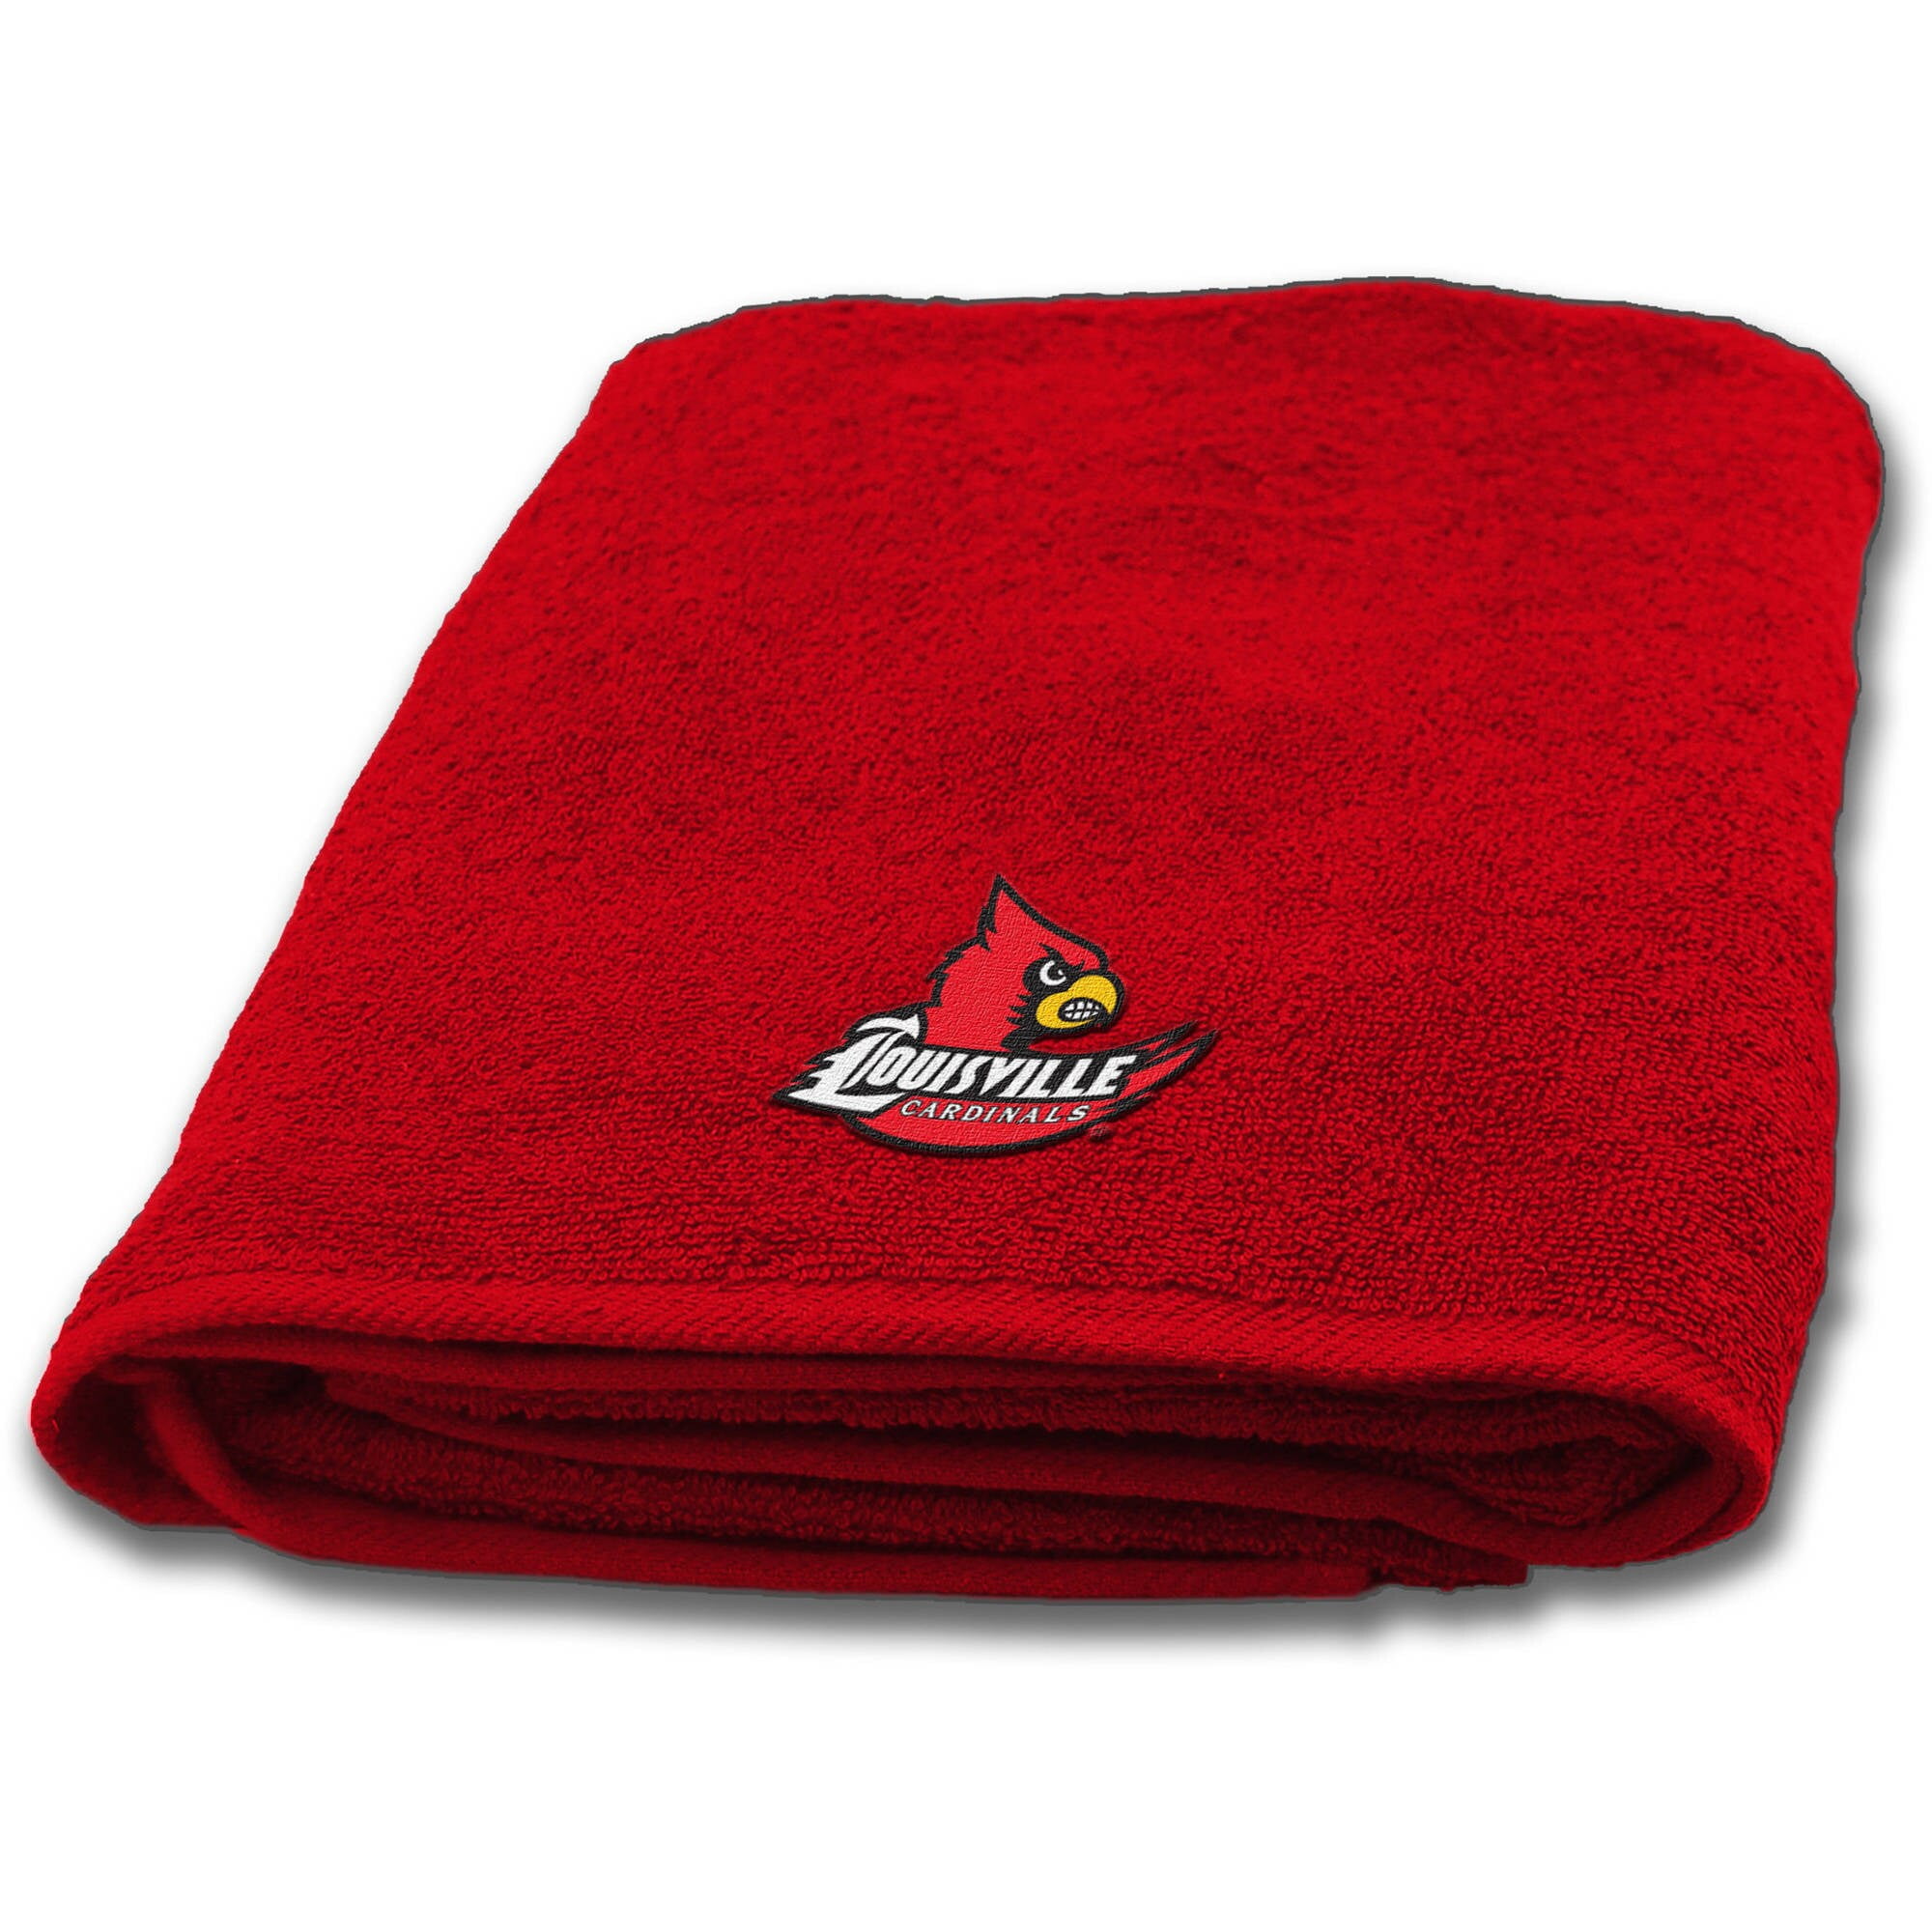  Northwest NCAA Louisville Cardinals 30-Inch-by-54-Inch Applique  Bath Towel : Home & Kitchen